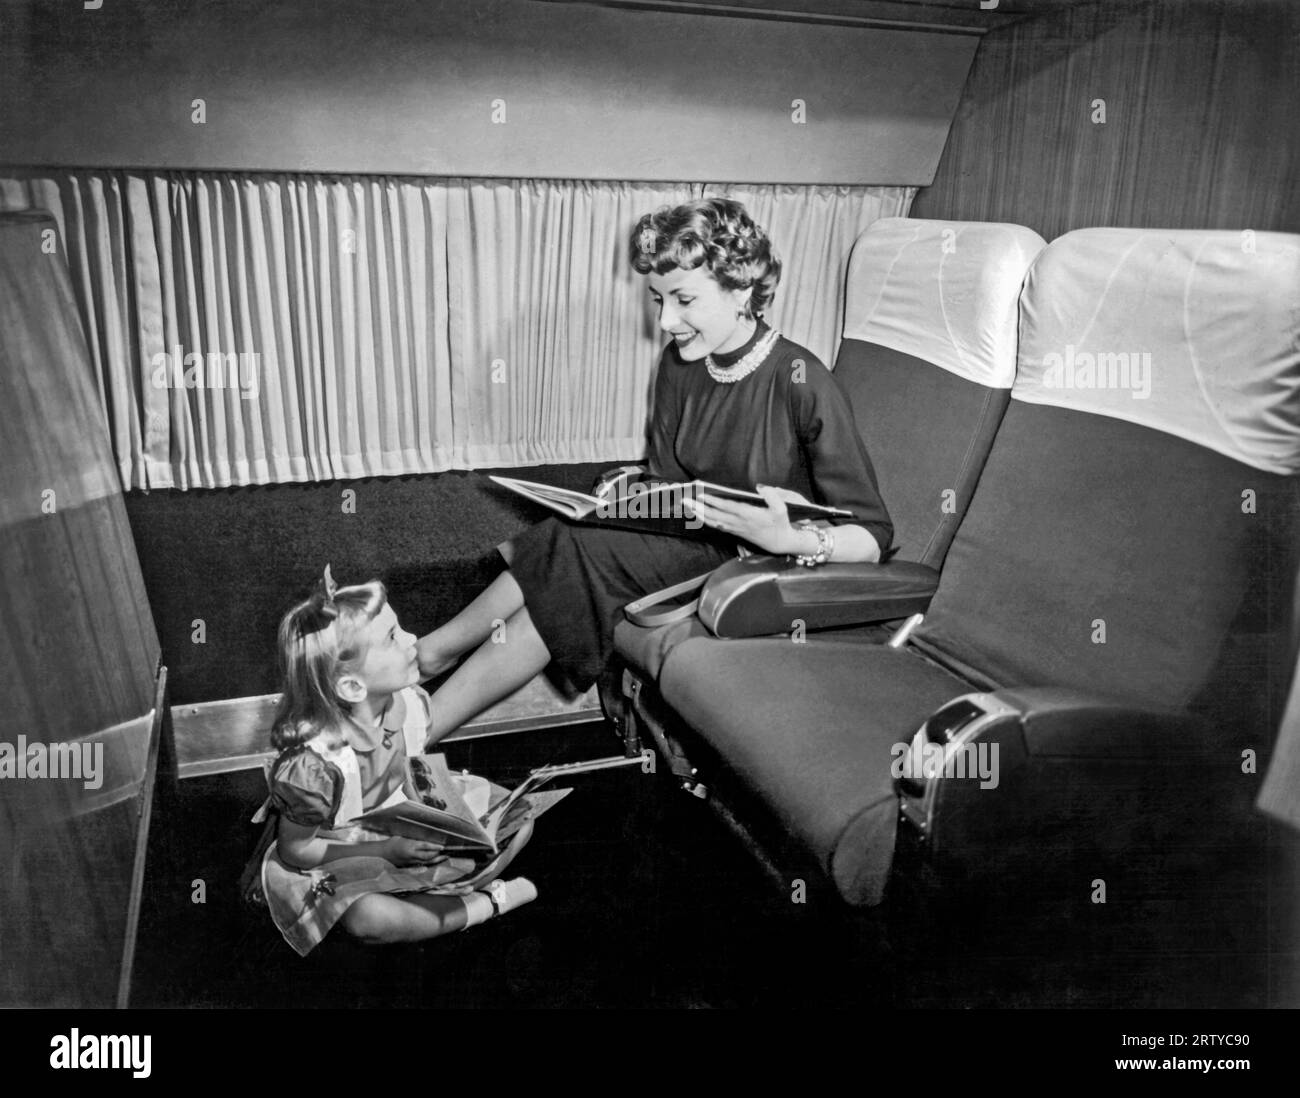 Francia 1953 passeggeri a bordo dell'Air France "The Golden Parisian" da Parigi a New York. Il Lockheed Super Constellations trasportava solo 32 passeggeri invece dei soliti 56, consentendo così lo spazio per gli Skyrooms. Foto Stock